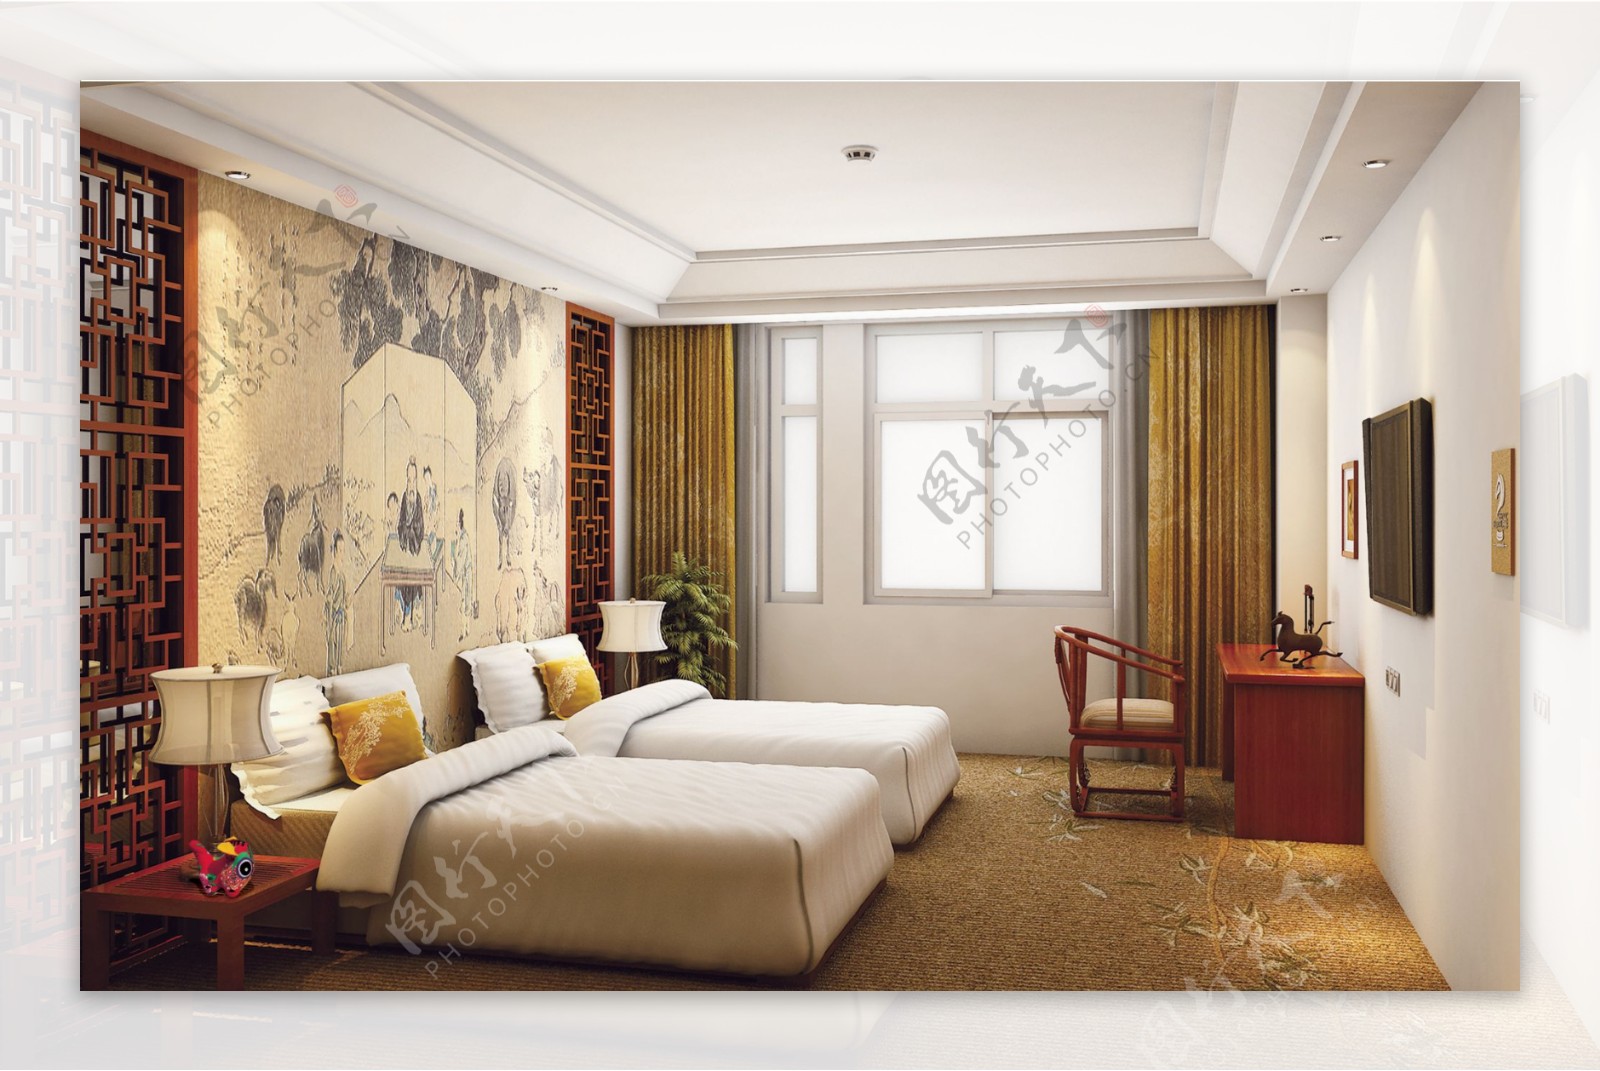 中式酒店卧室风格效果图